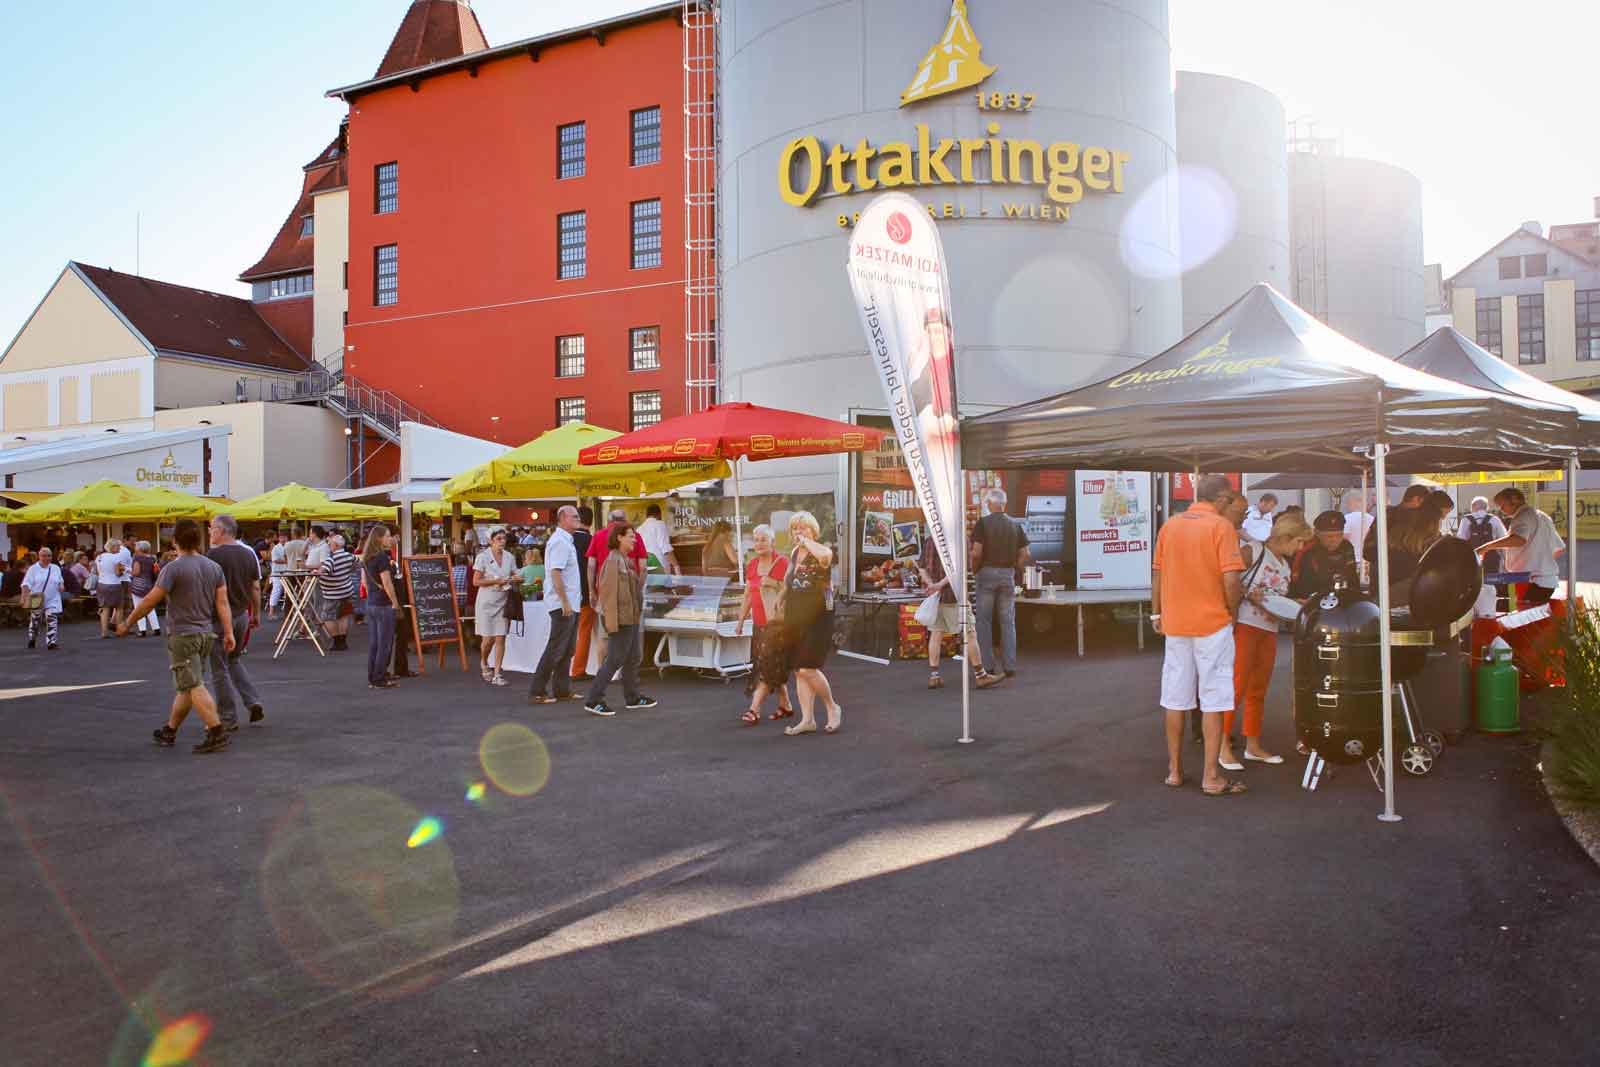 Die Ottakringer Braukultur Wochen gehen in die zweite Runde: 9 Wochen Bierkultur am Ottakringer Platz!